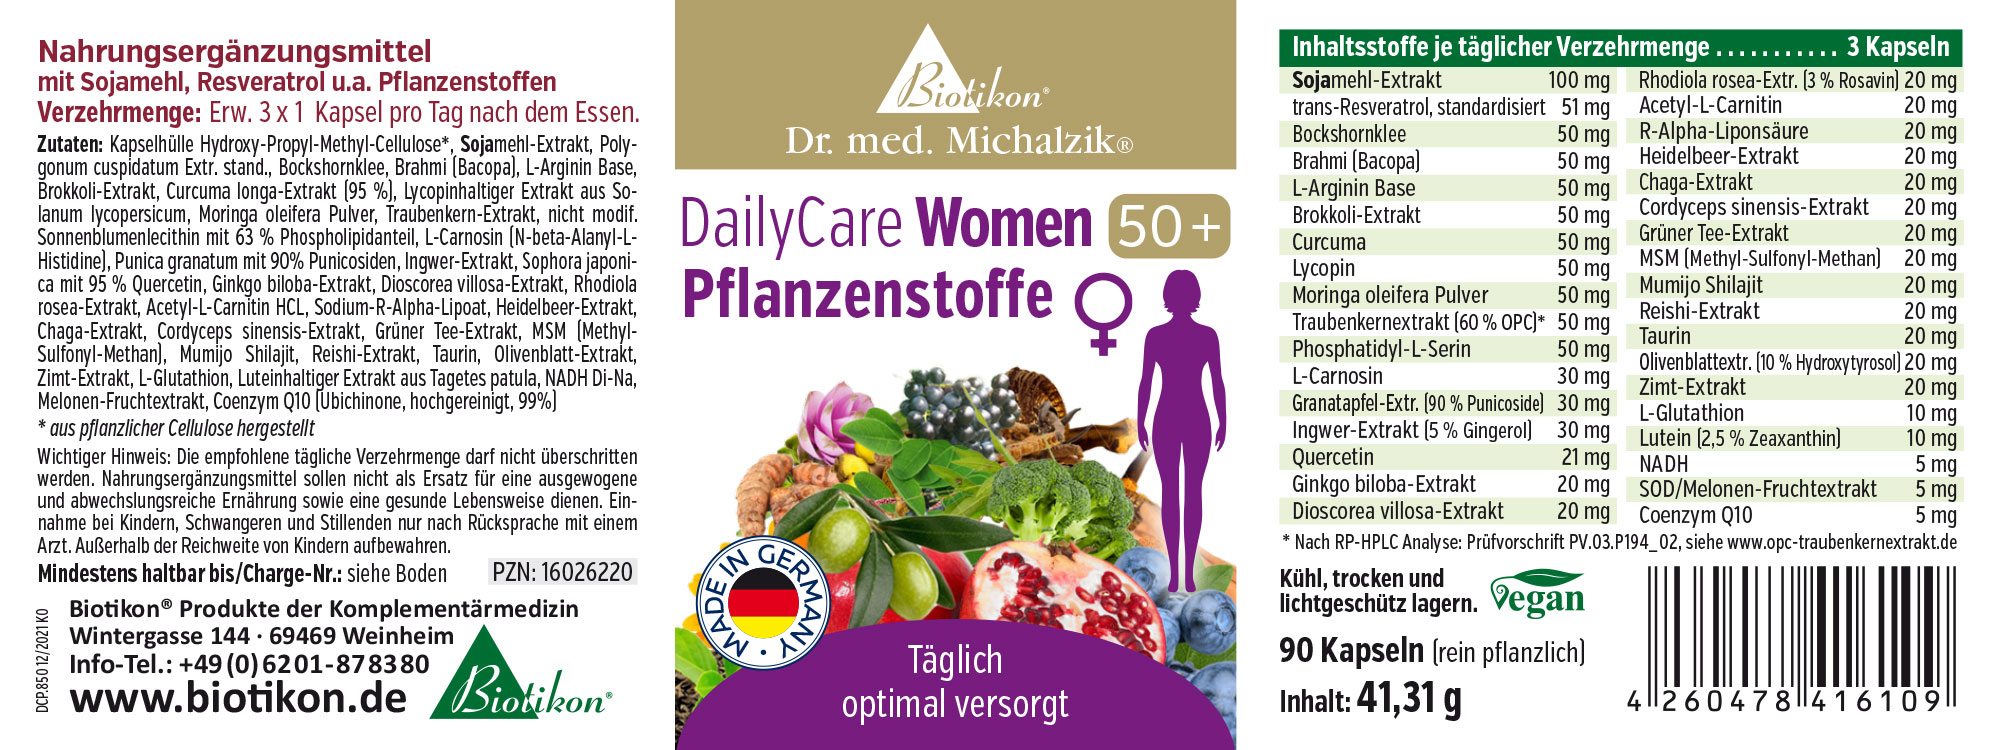 DailyCare Women 50+ substances végétales